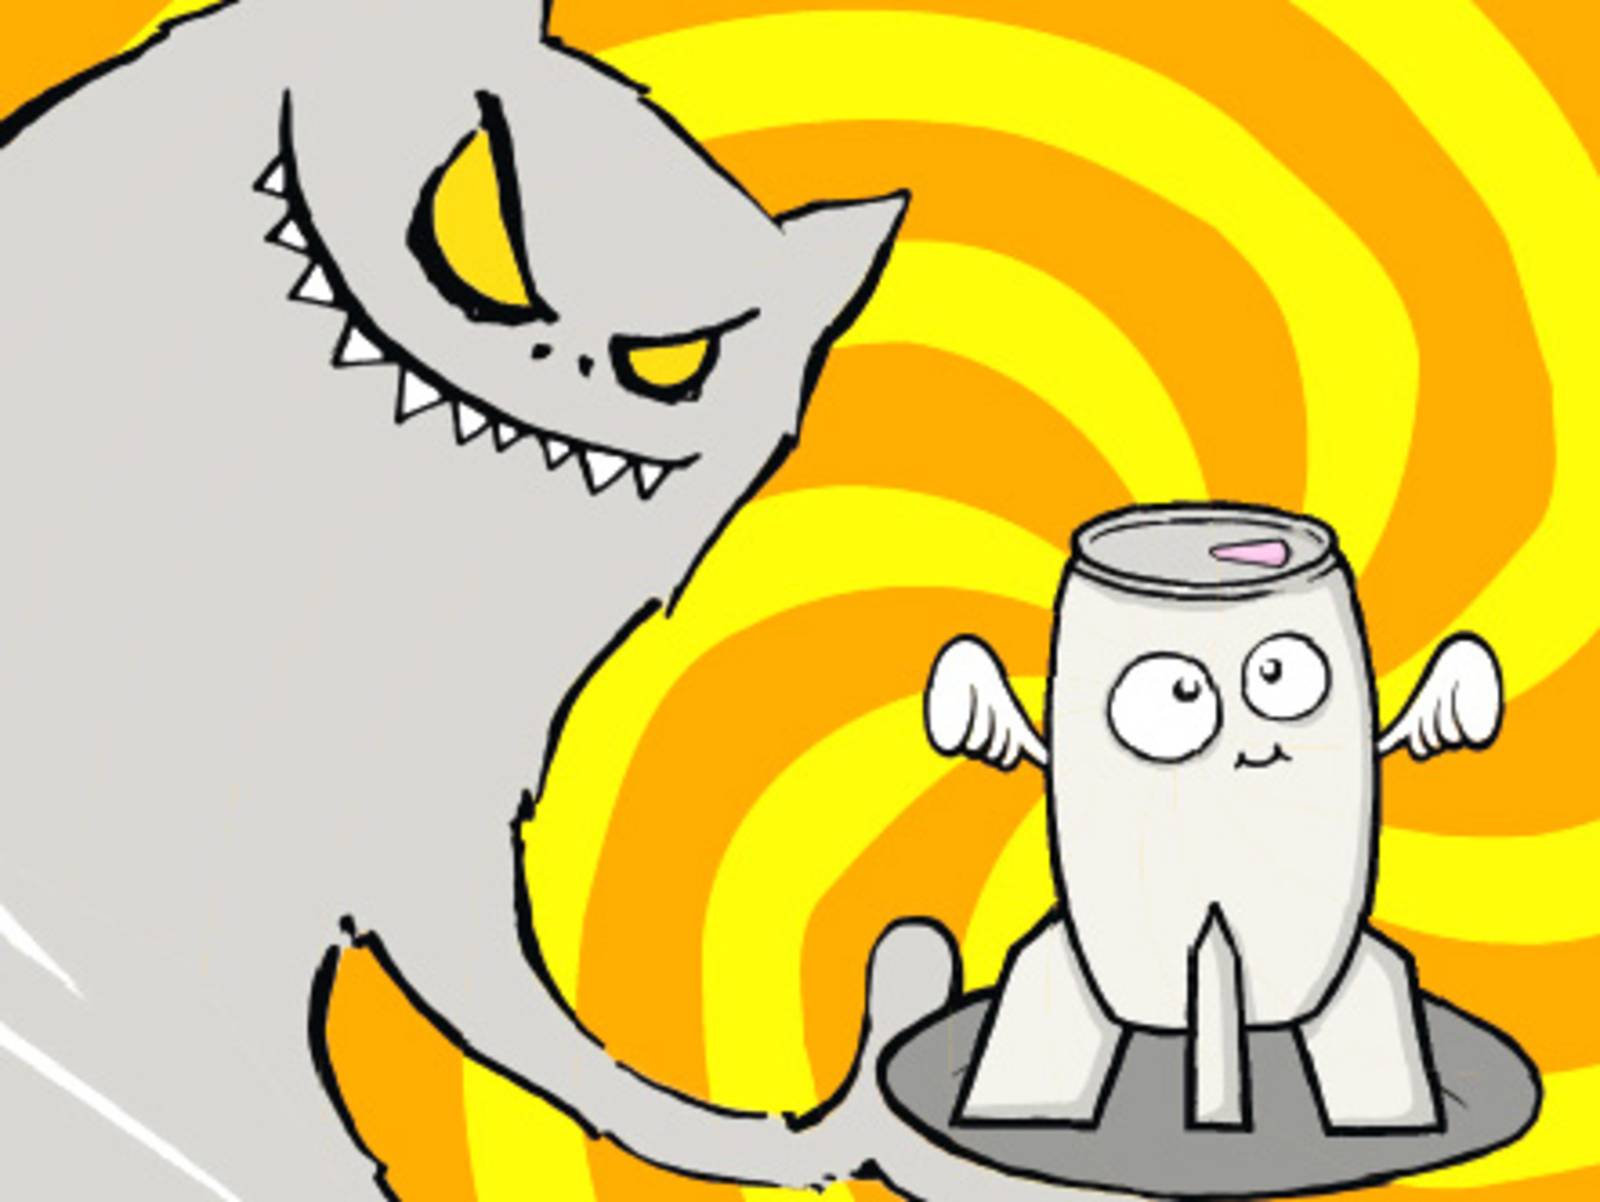 Cartoondarstellung: Ein Monster serviert einen Energy-Drink auf einem Tablett